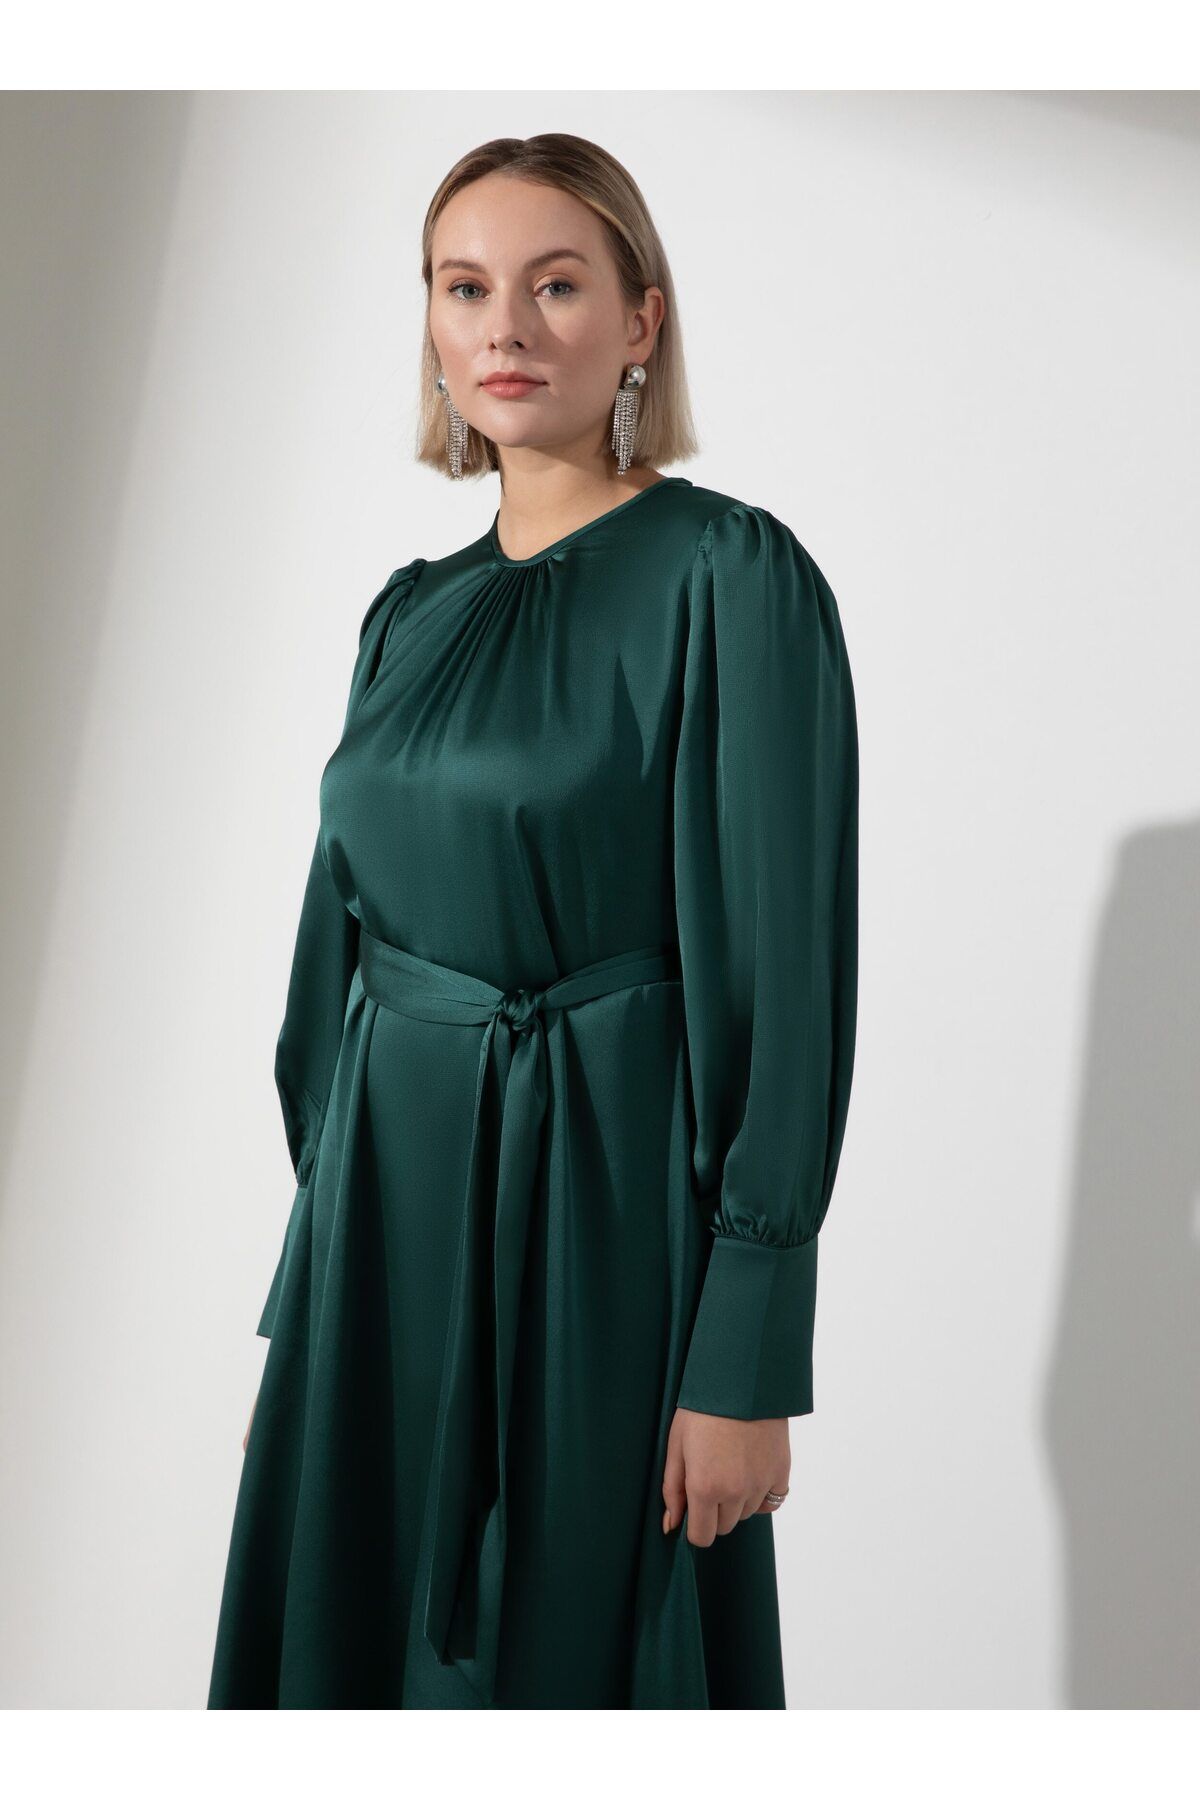 Alia Balon Kol Büyük Beden Saten Elbise - Zümrüt Yeşili- Alia